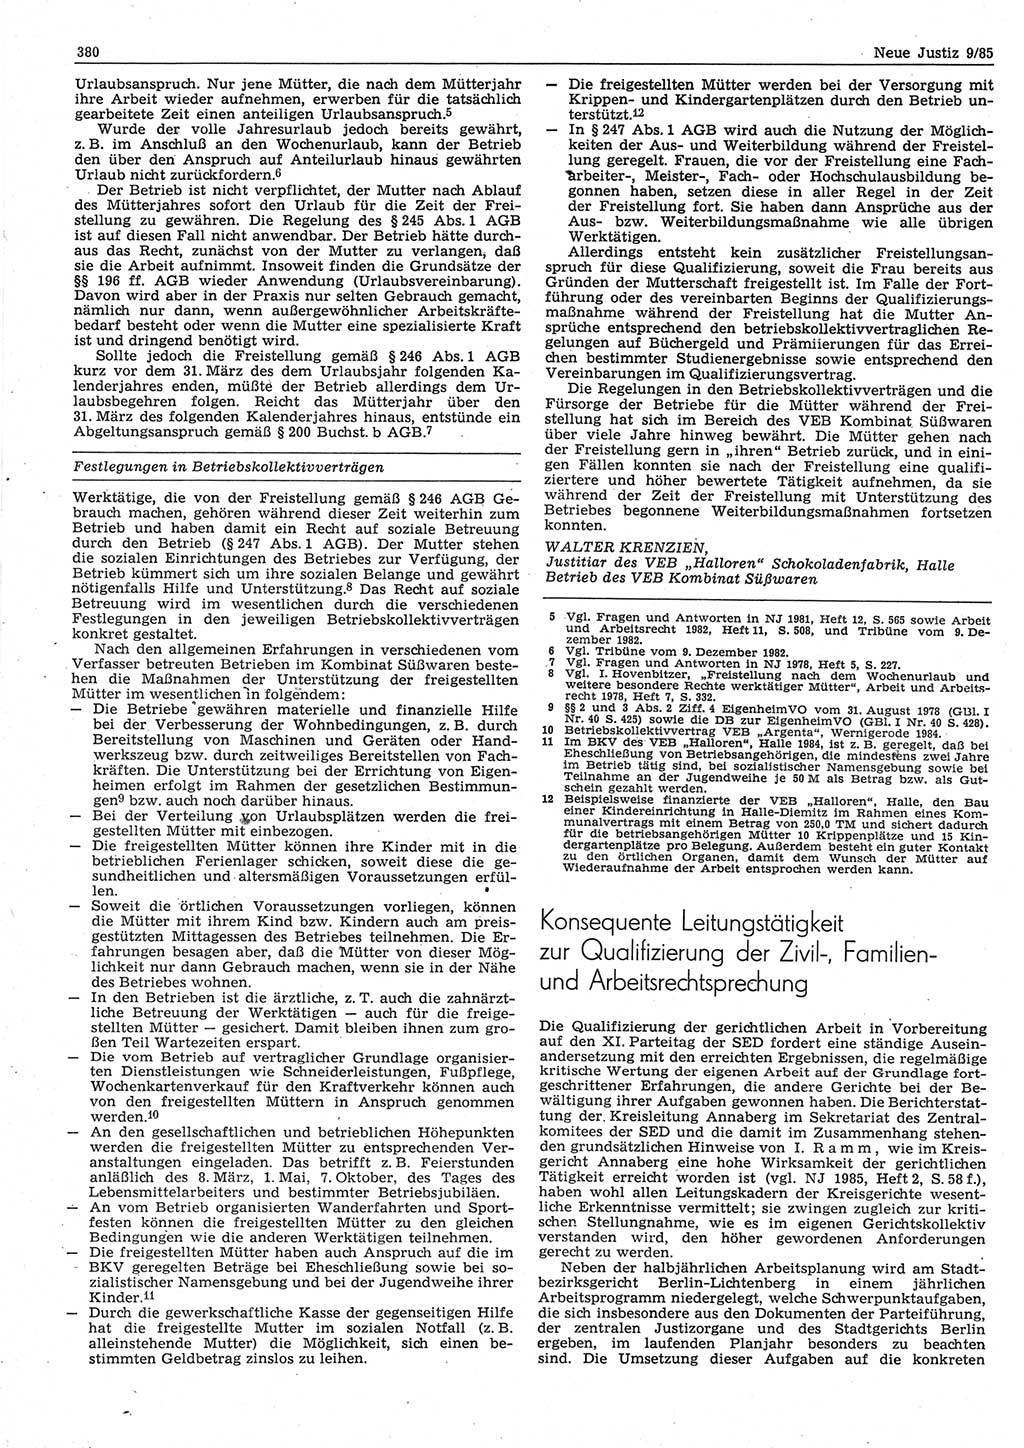 Neue Justiz (NJ), Zeitschrift für sozialistisches Recht und Gesetzlichkeit [Deutsche Demokratische Republik (DDR)], 39. Jahrgang 1985, Seite 380 (NJ DDR 1985, S. 380)